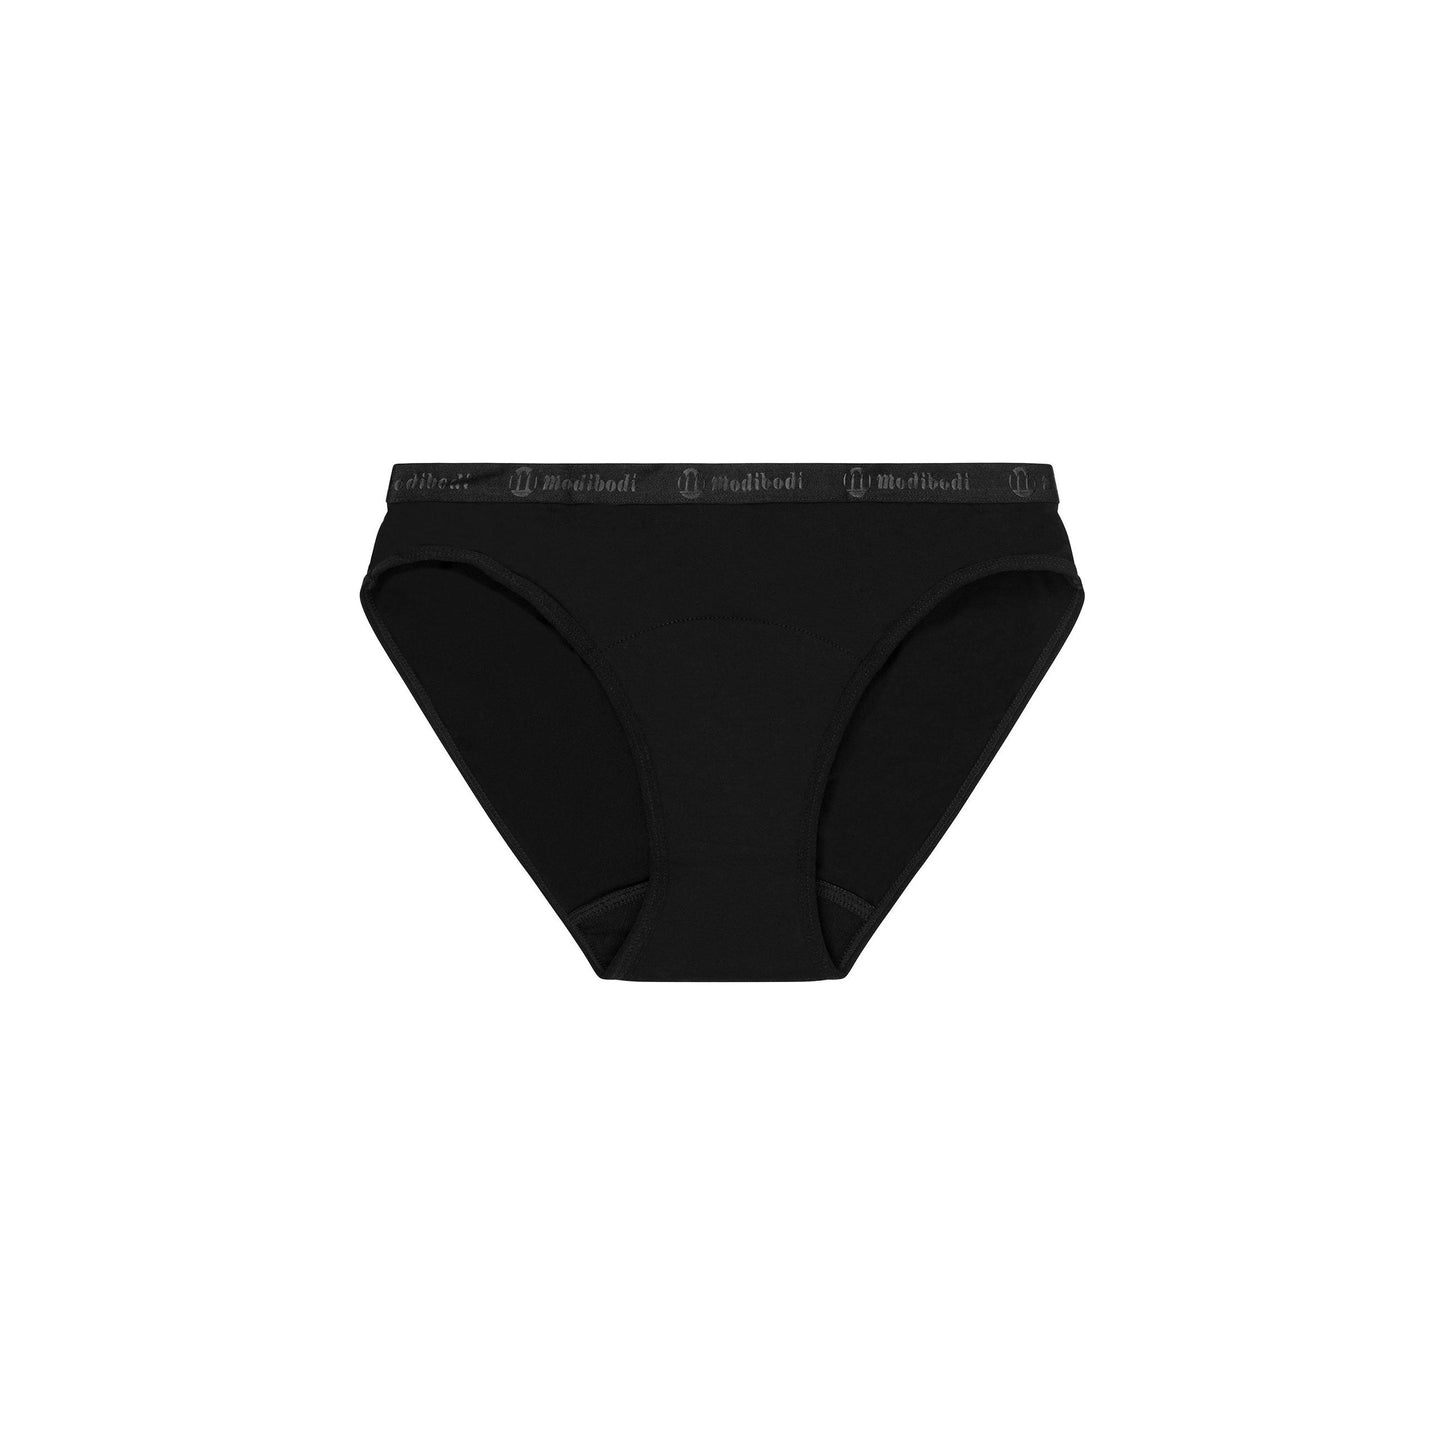 Modibodi Vegan Bikini - Menstruation Underwear - Light Moderate